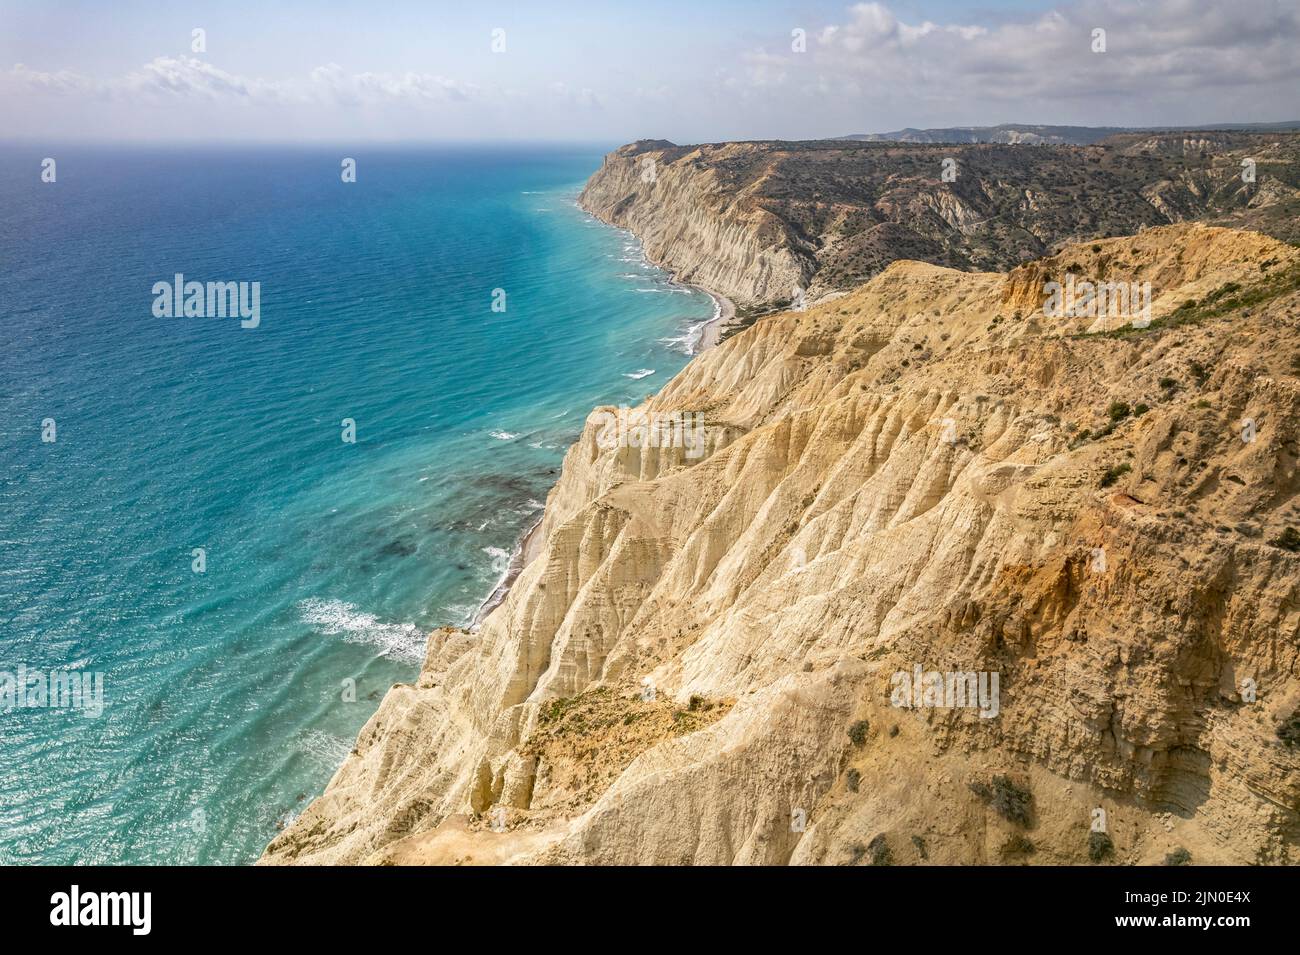 Die Steilküste vom Kap Aspro bei Pissouri aus der Luft gesehen, Zypern, Europa  |  Aerial view of the steep coast of Cape Aspro near Pissouri, Cyprus, Stock Photo